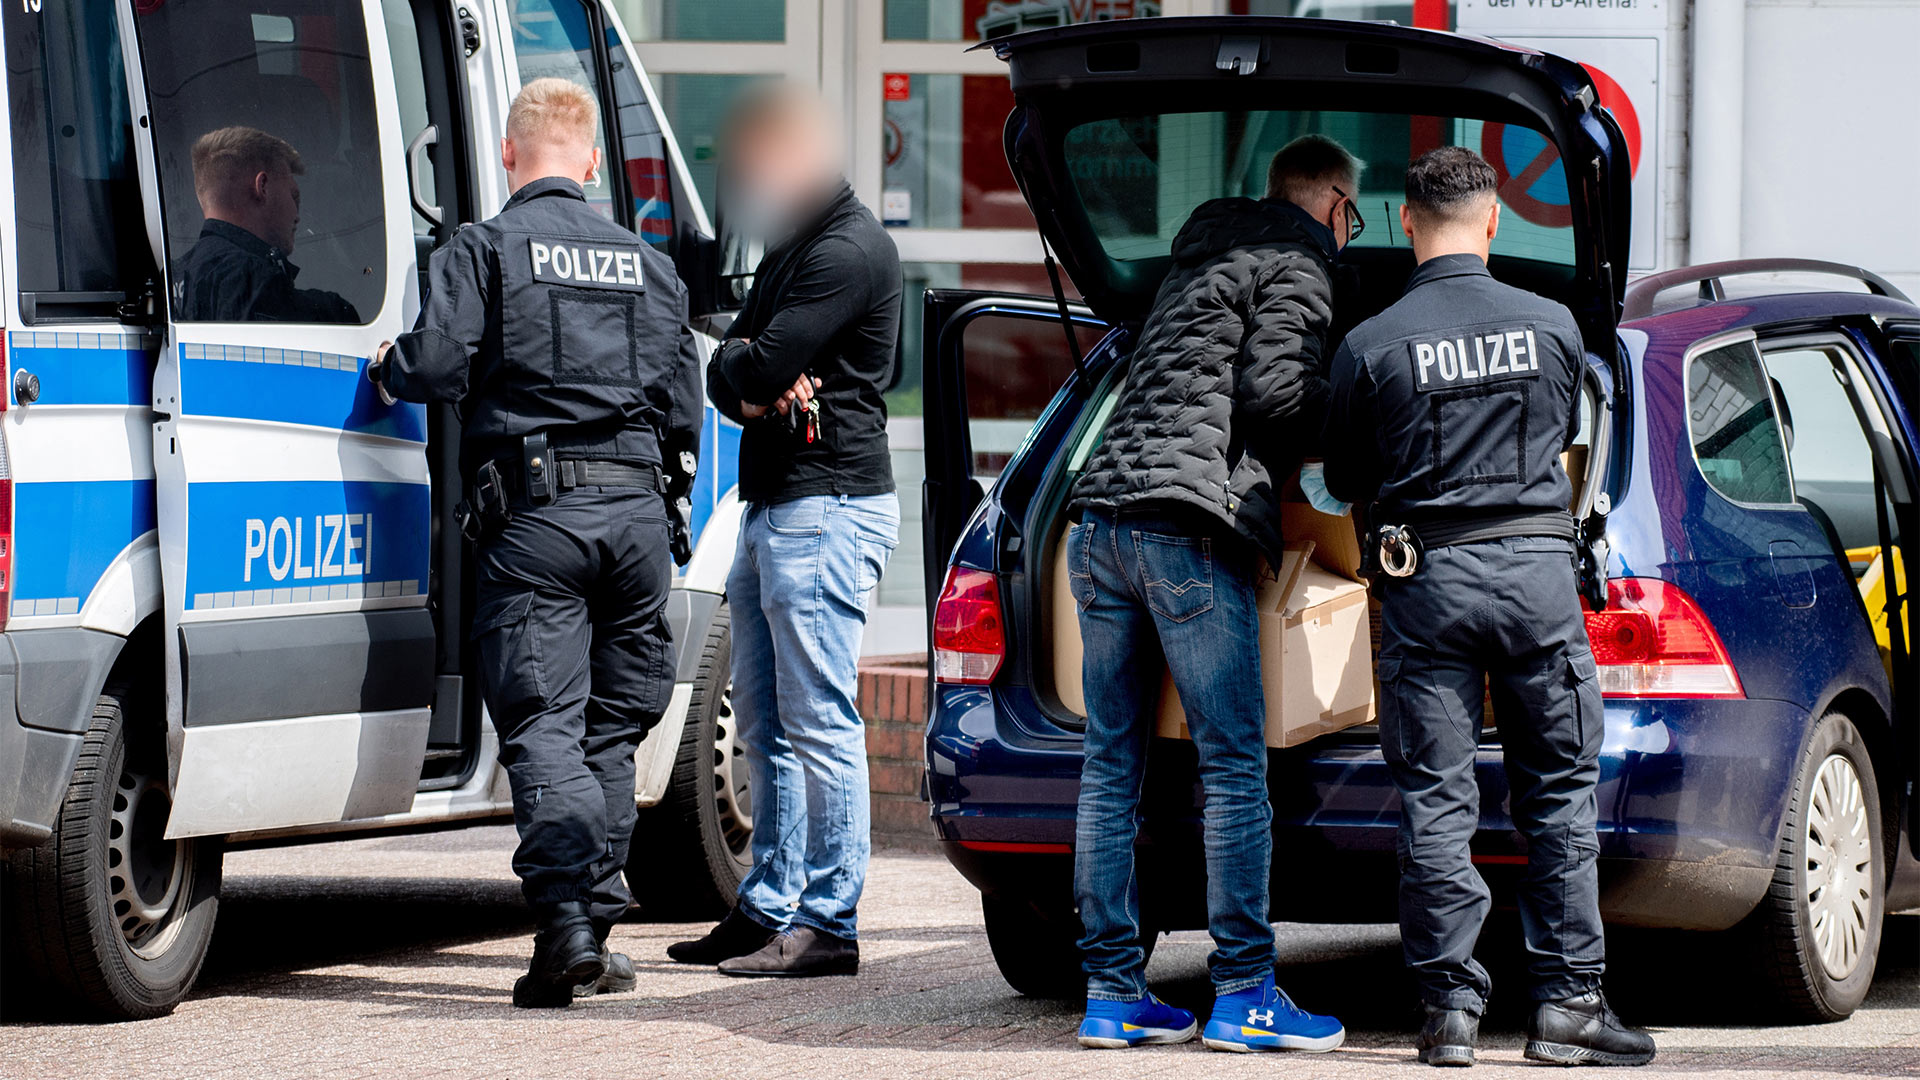 Ermittlungsbeamte der Polizei in Niedersachsen bei einer Durchsuchung | picture alliance/dpa